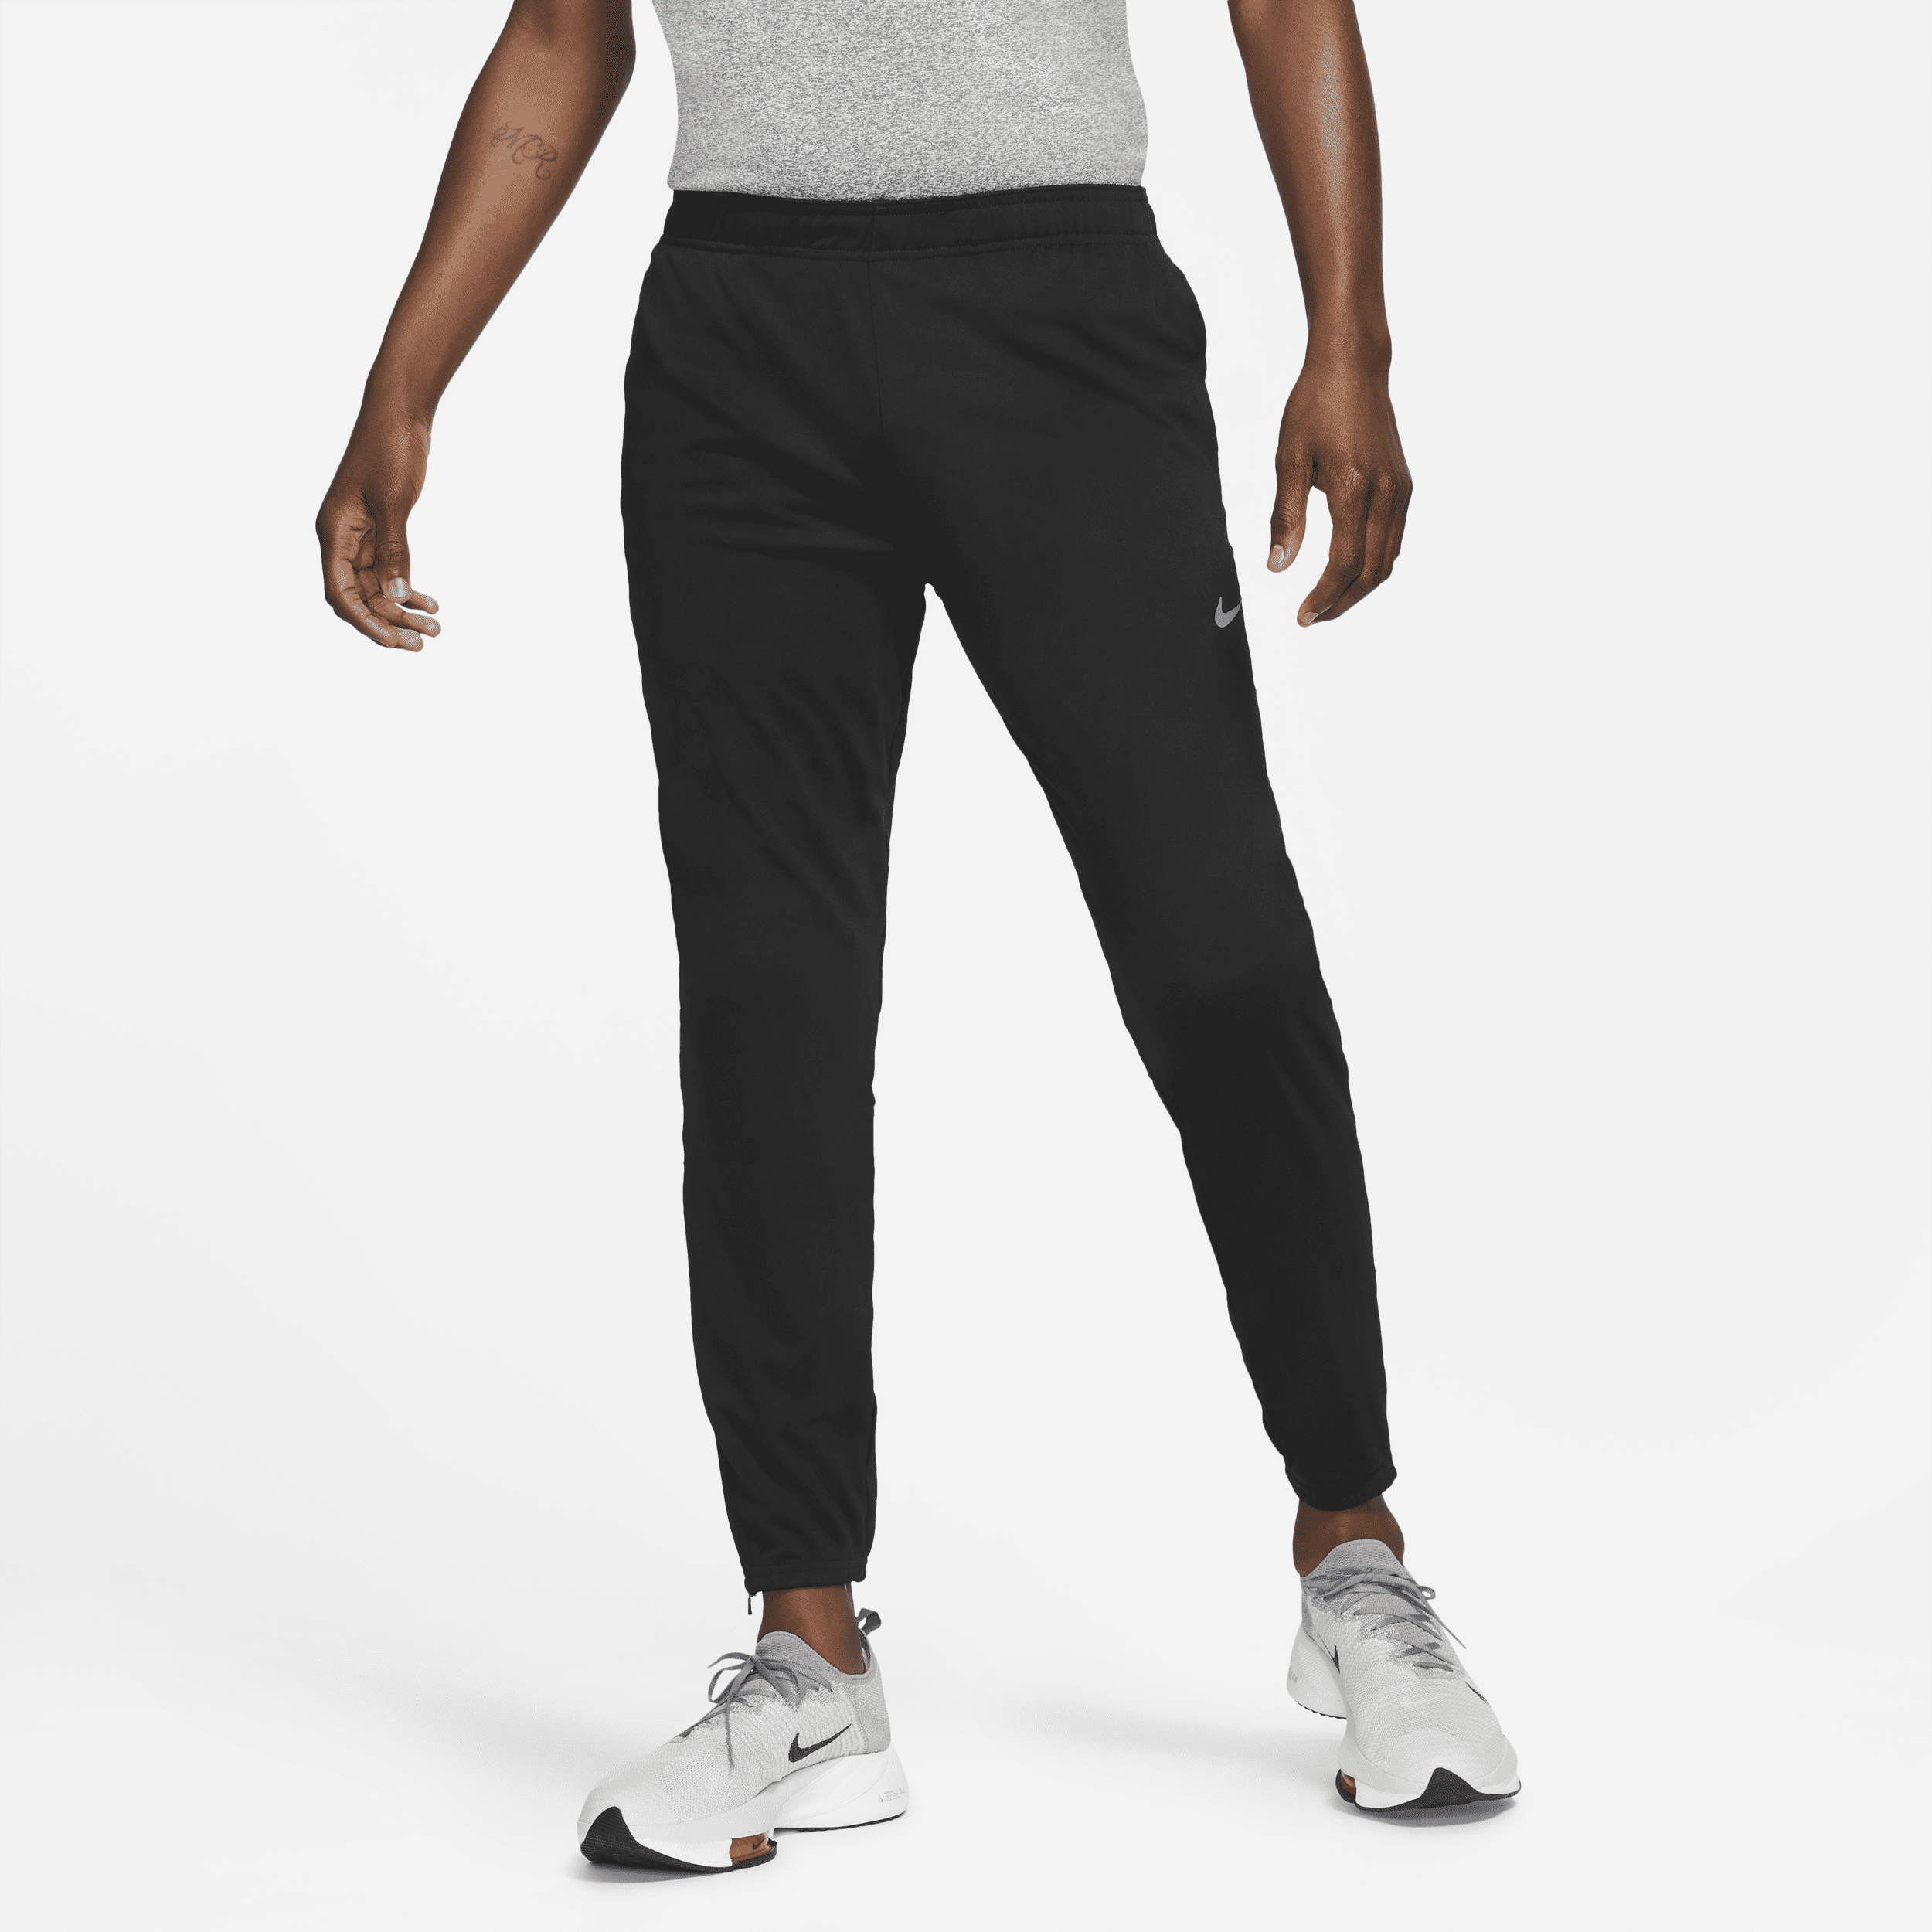 Calça Nike Dri-FIT Challenger Masculina